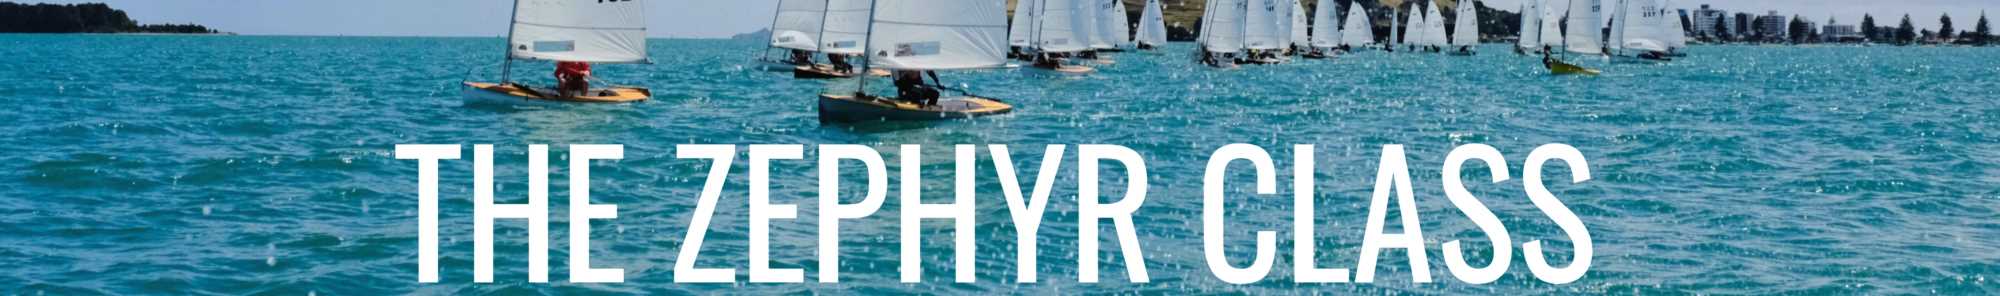 zephyr 33 sailboat